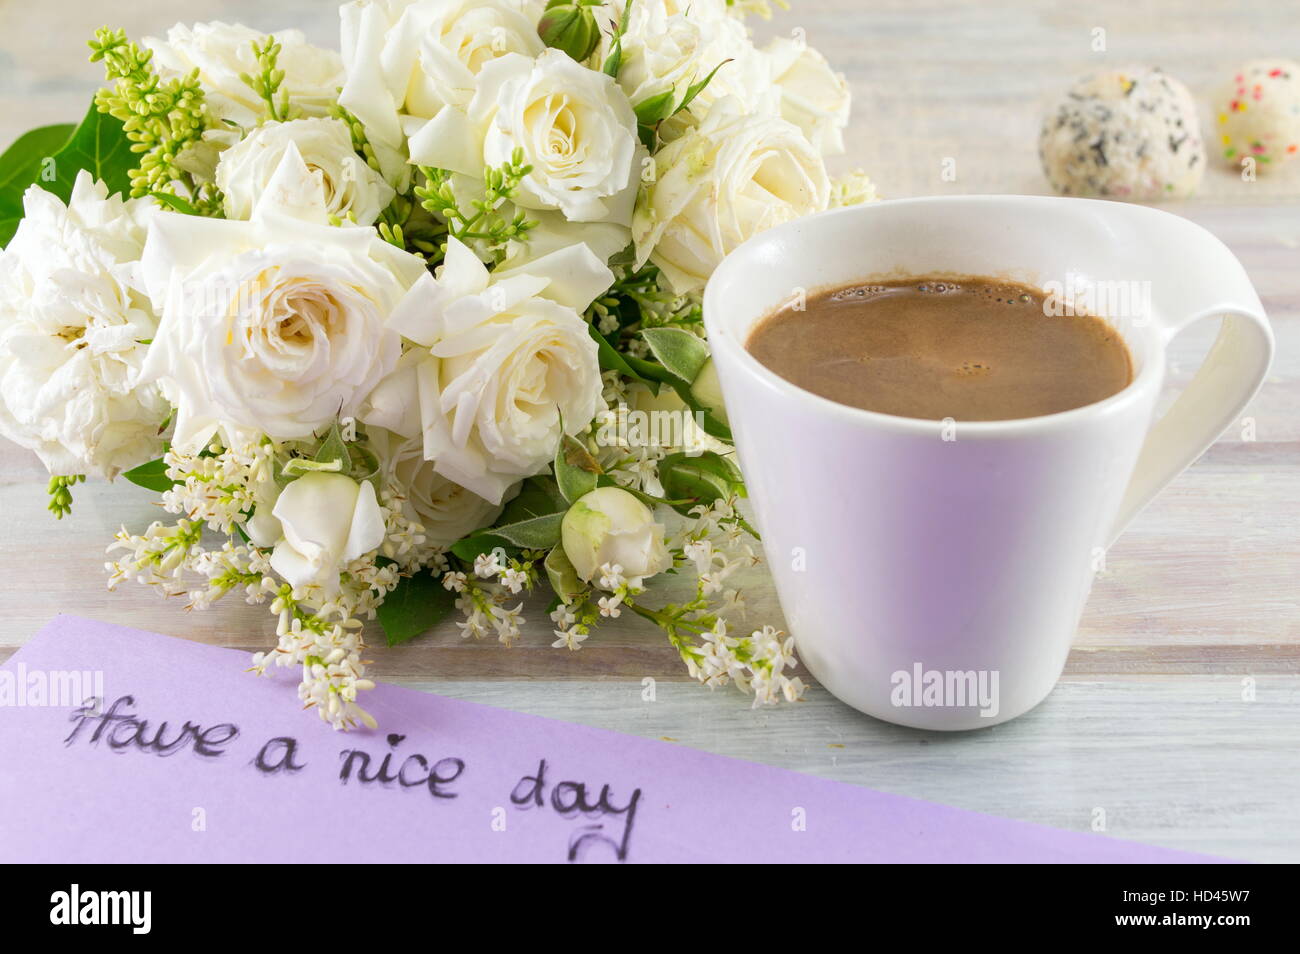 Rose bianche, caffè e hanno un bel giorno nota su un tavolo Foto Stock